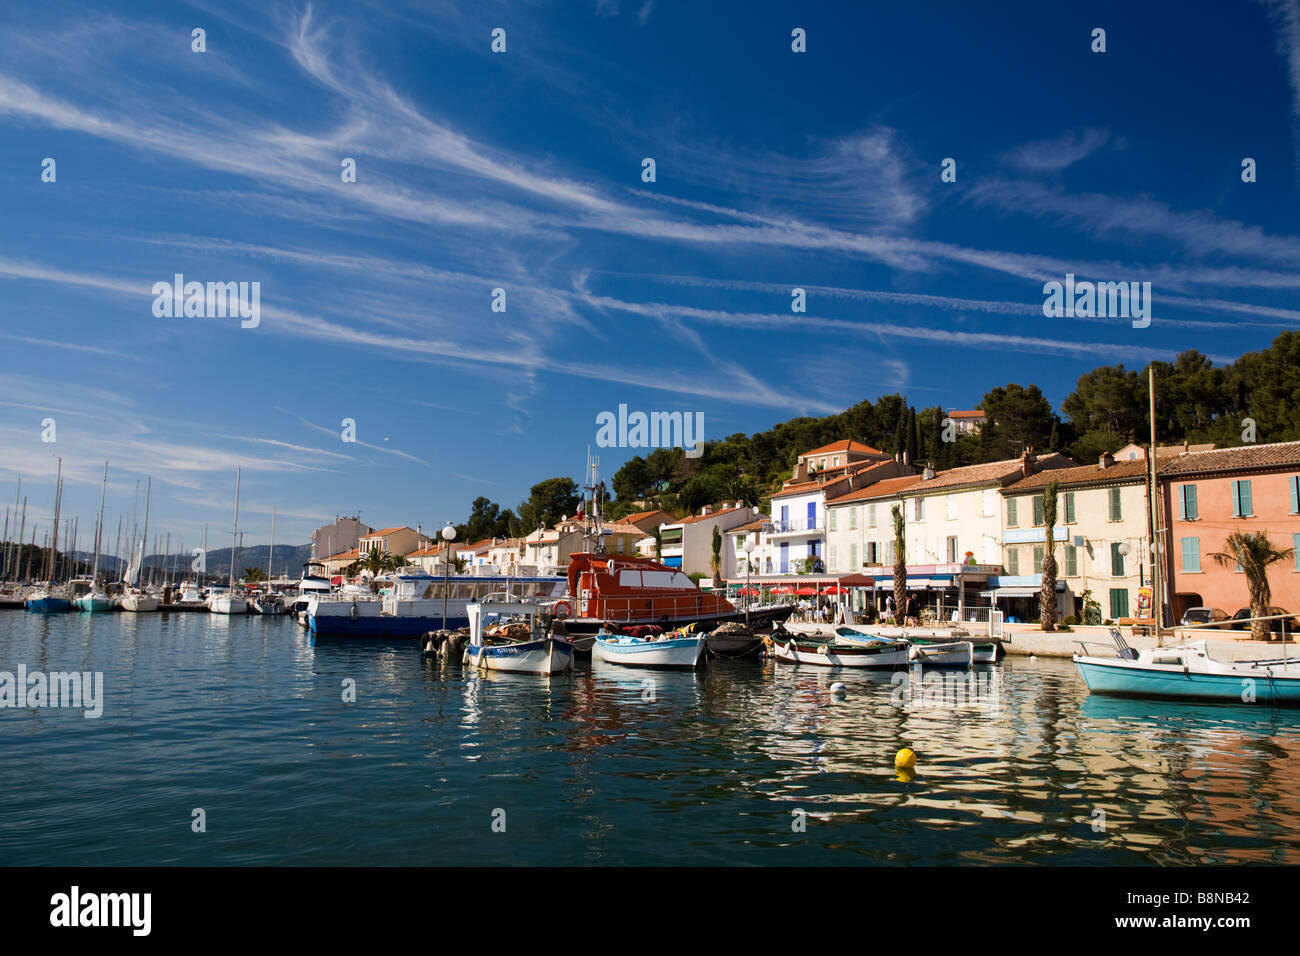 St Mandrier sur Mer, Toulon, Var et Cote d'Azur, France Stock Photo - Alamy